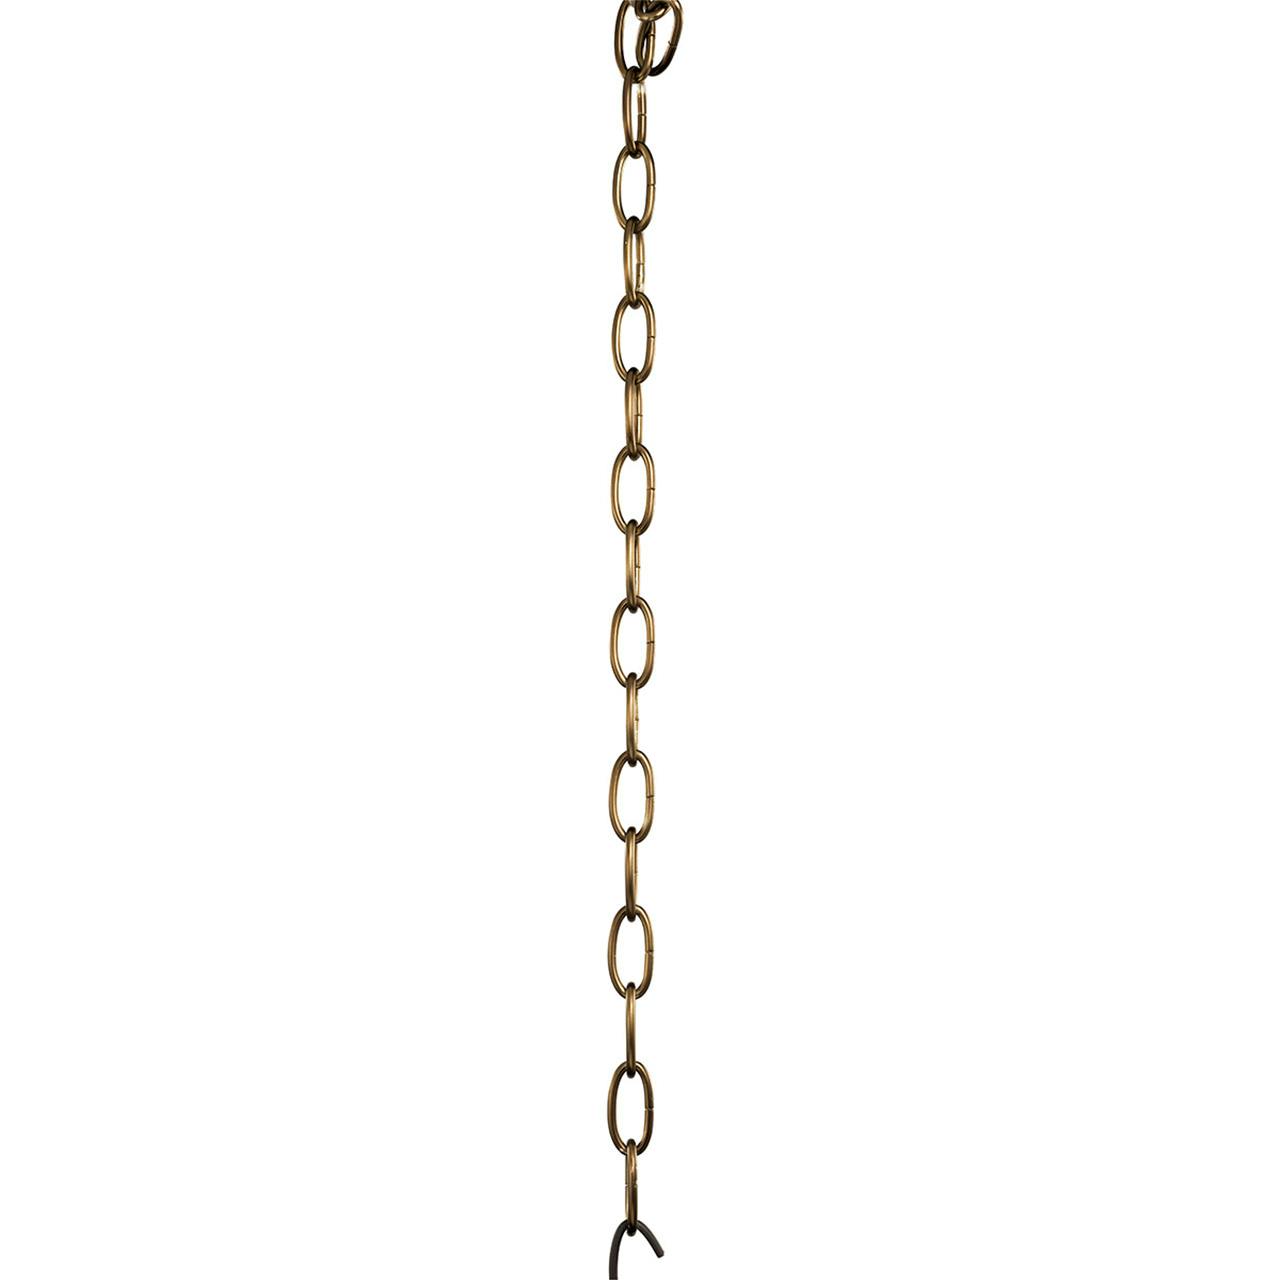 36" Standard Gauge Chain Satin Bronze on a white background